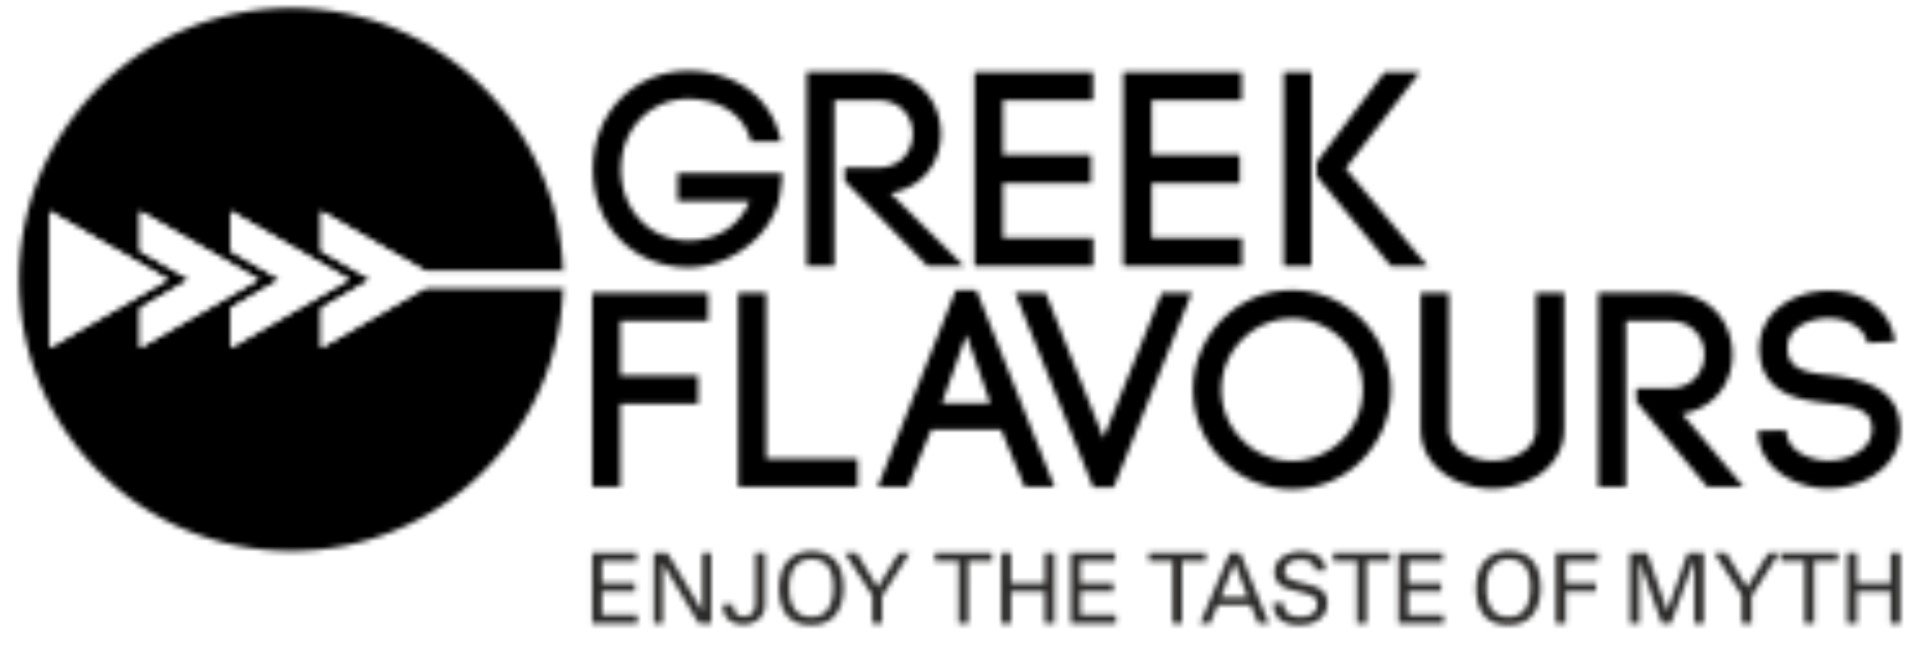 Greek Flavours FR logo